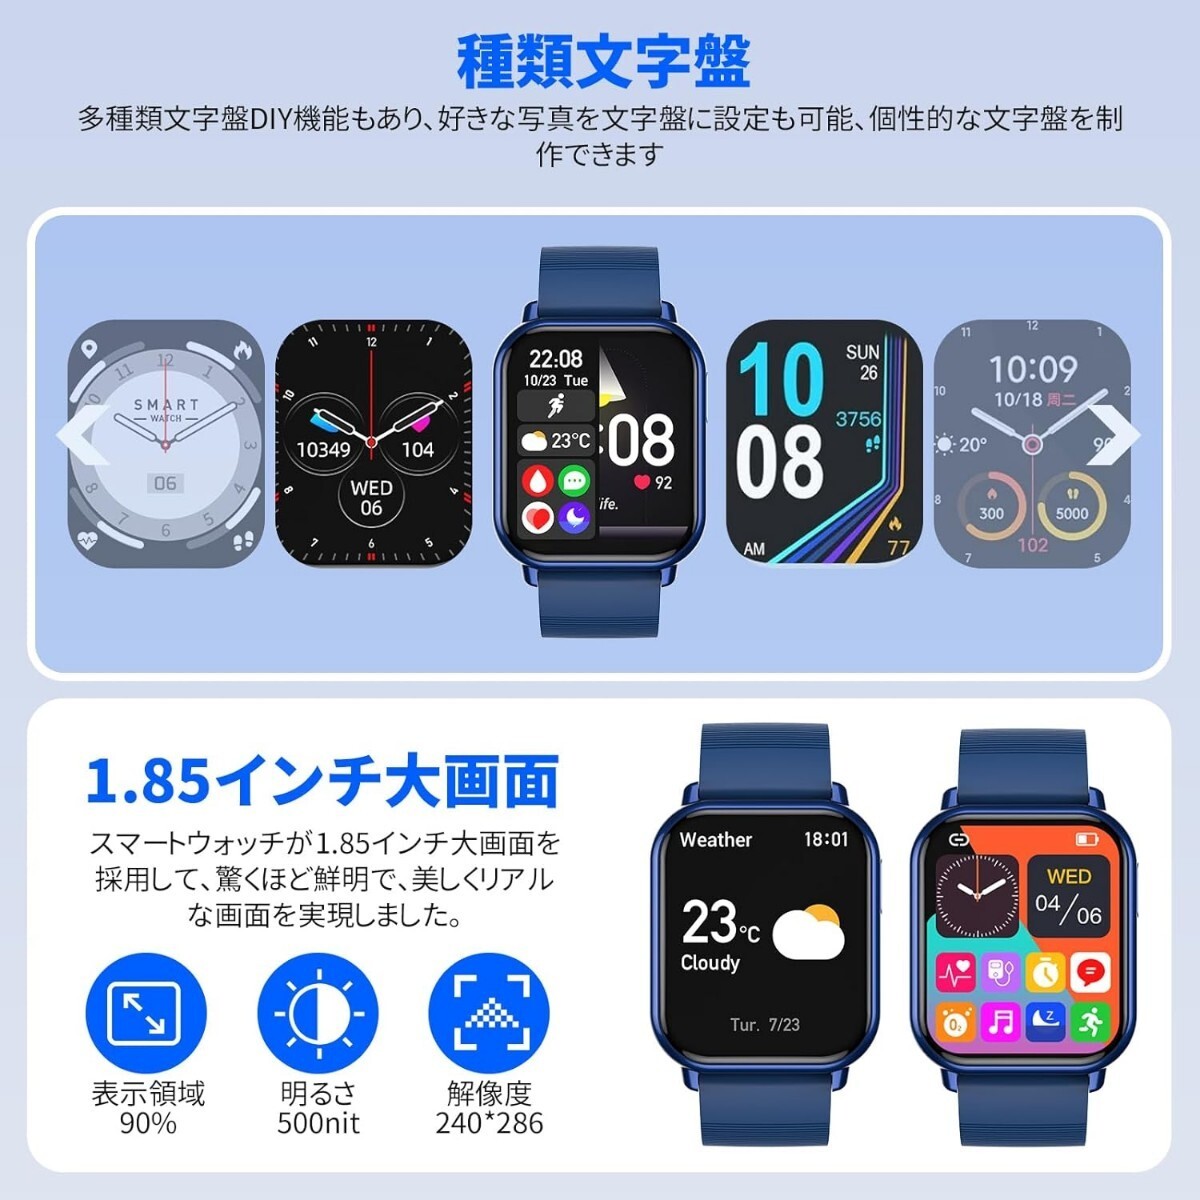 ◆新品 本体 スマートウォッチ 着信通知 ブルー 青 防水 1.85インチ大画面 腕時計 Bluetooth iPhone対応 Android対応 日本語説明書 _画像7